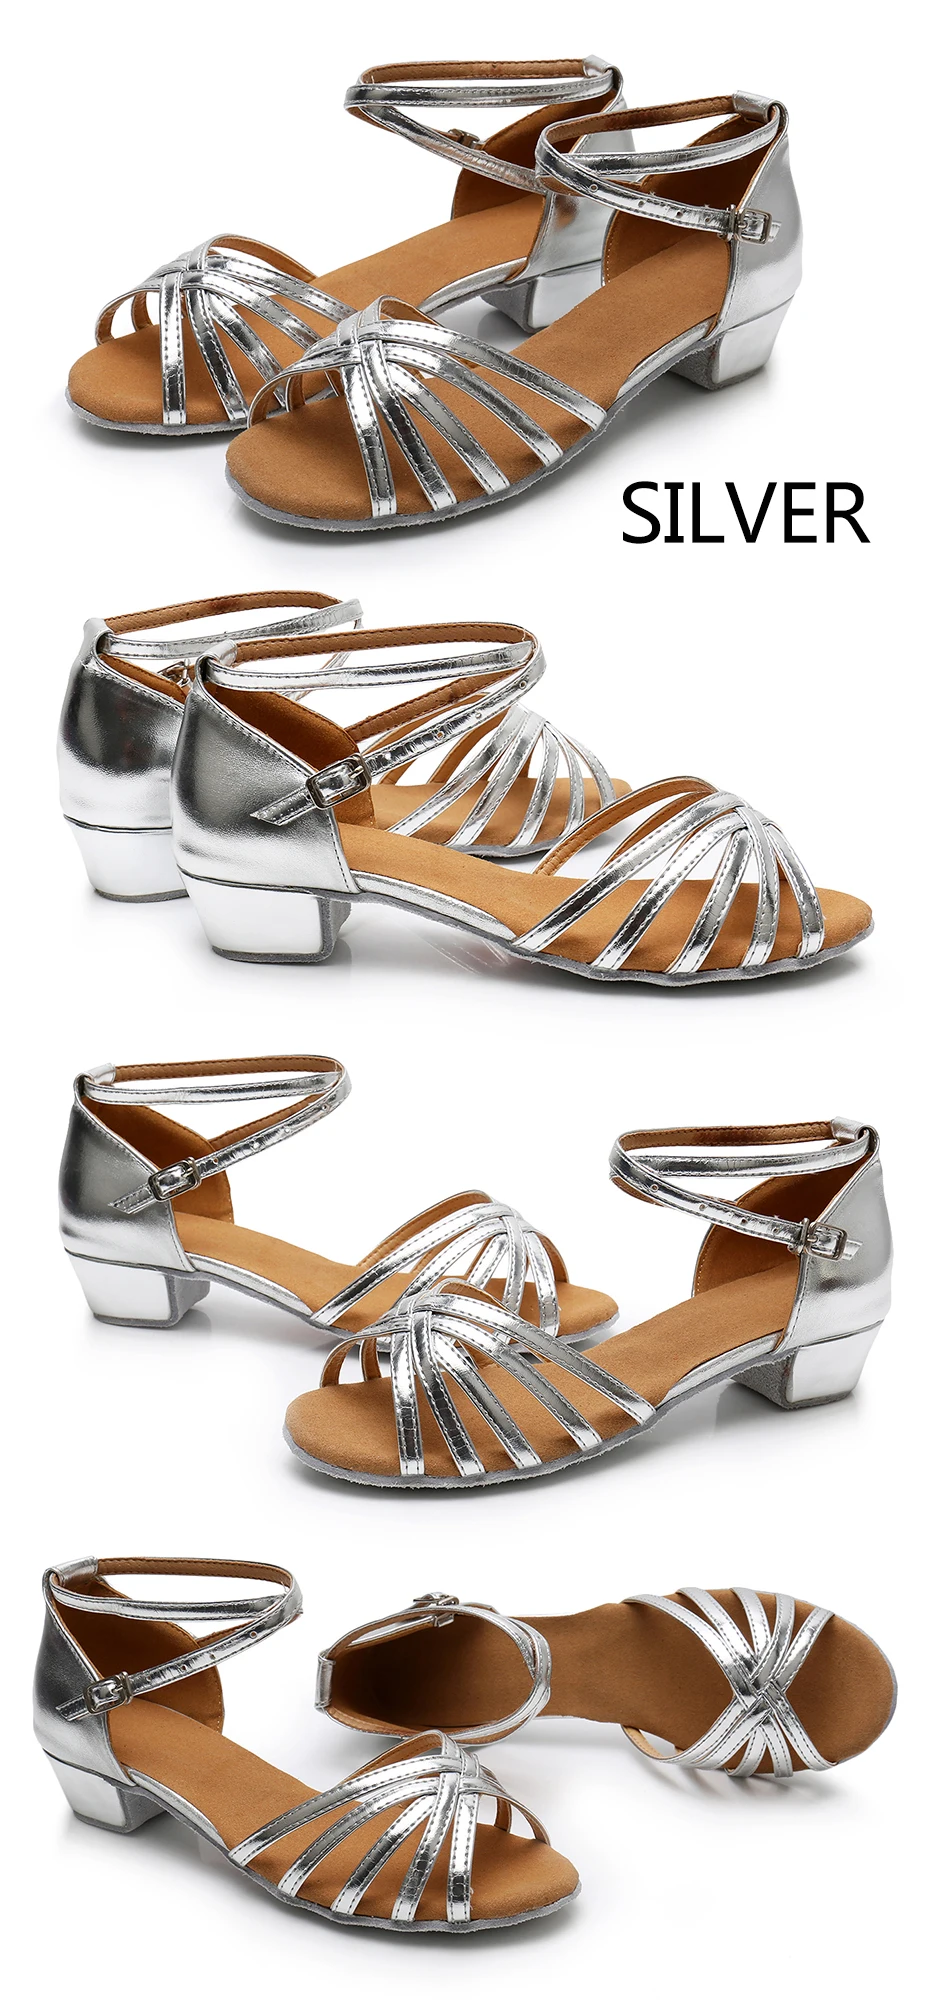 EU24-41, женская обувь для латиноамериканских танцев, Детские бальные танцевальные туфли на низком каблуке для девочек, детские женские туфли для сальсы, Каблук 3,5 см